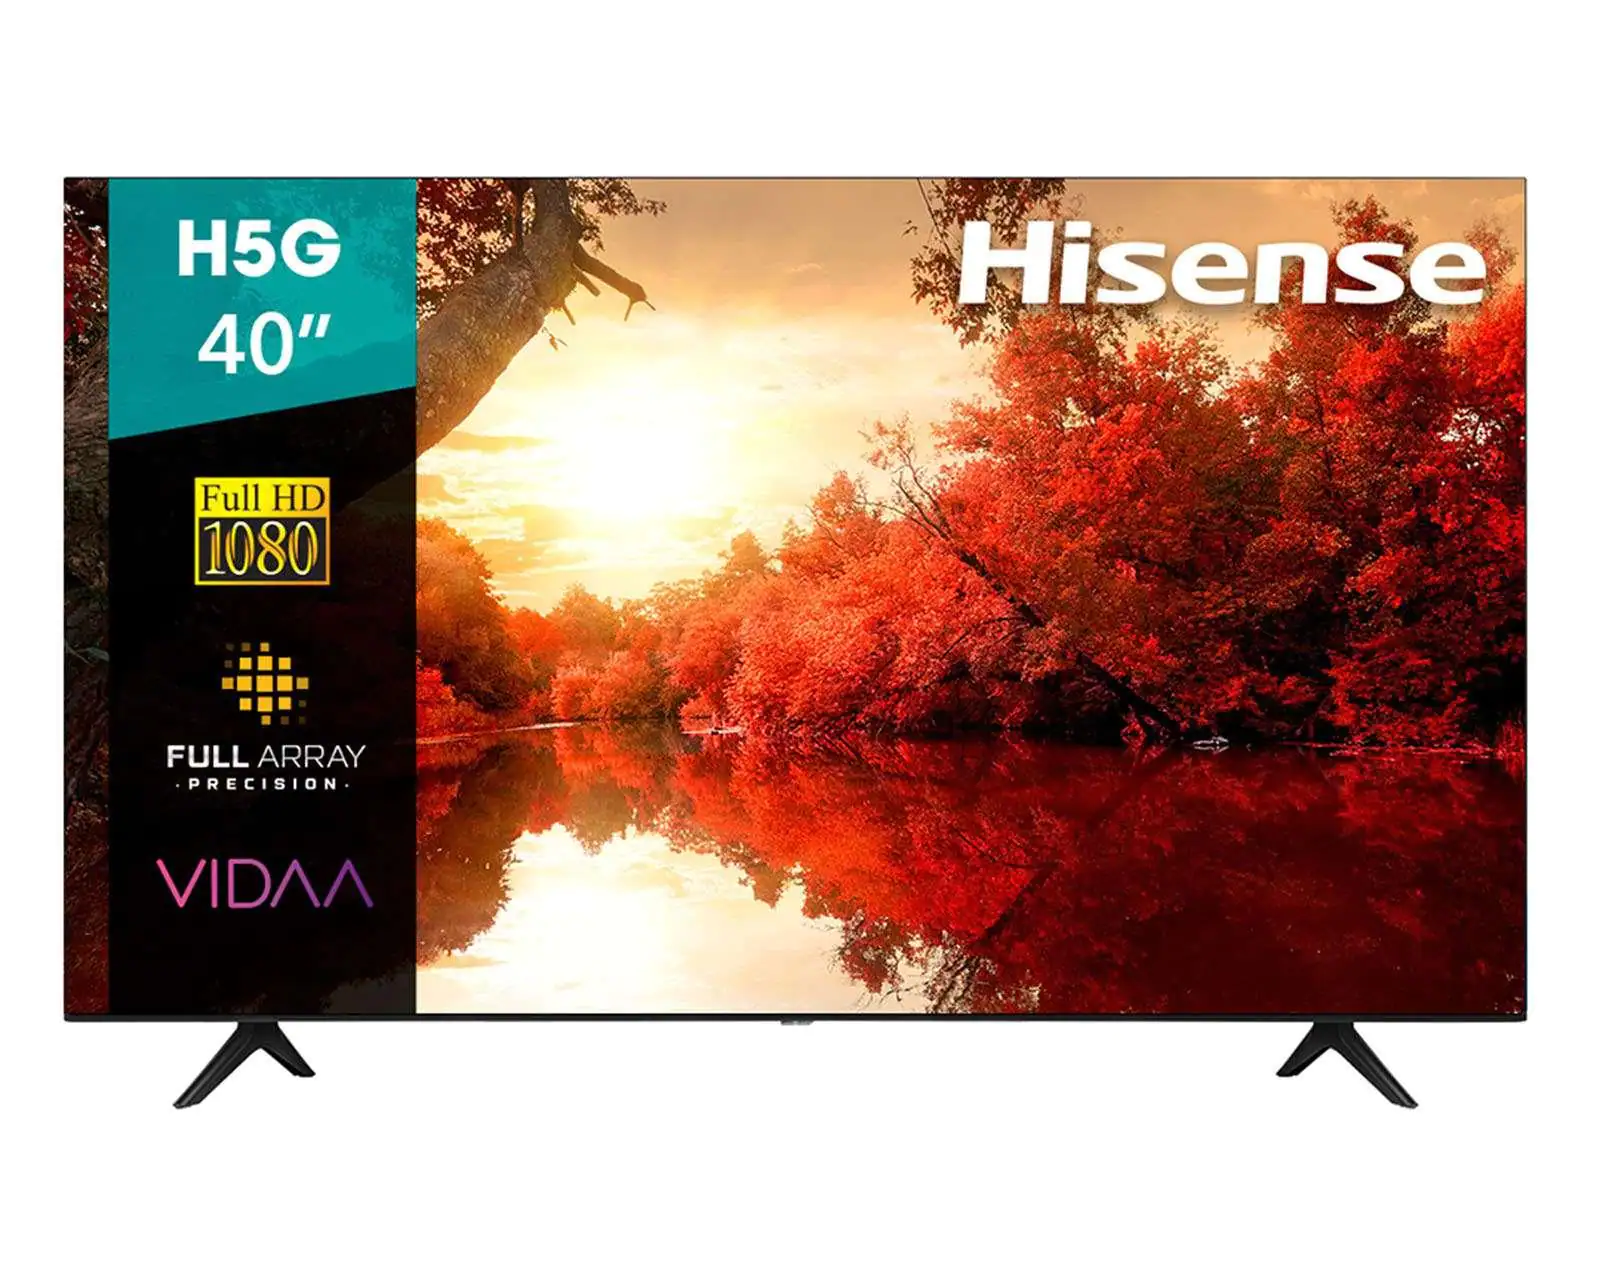 Hisense 40 VIDAA LED Smart FHD TV 